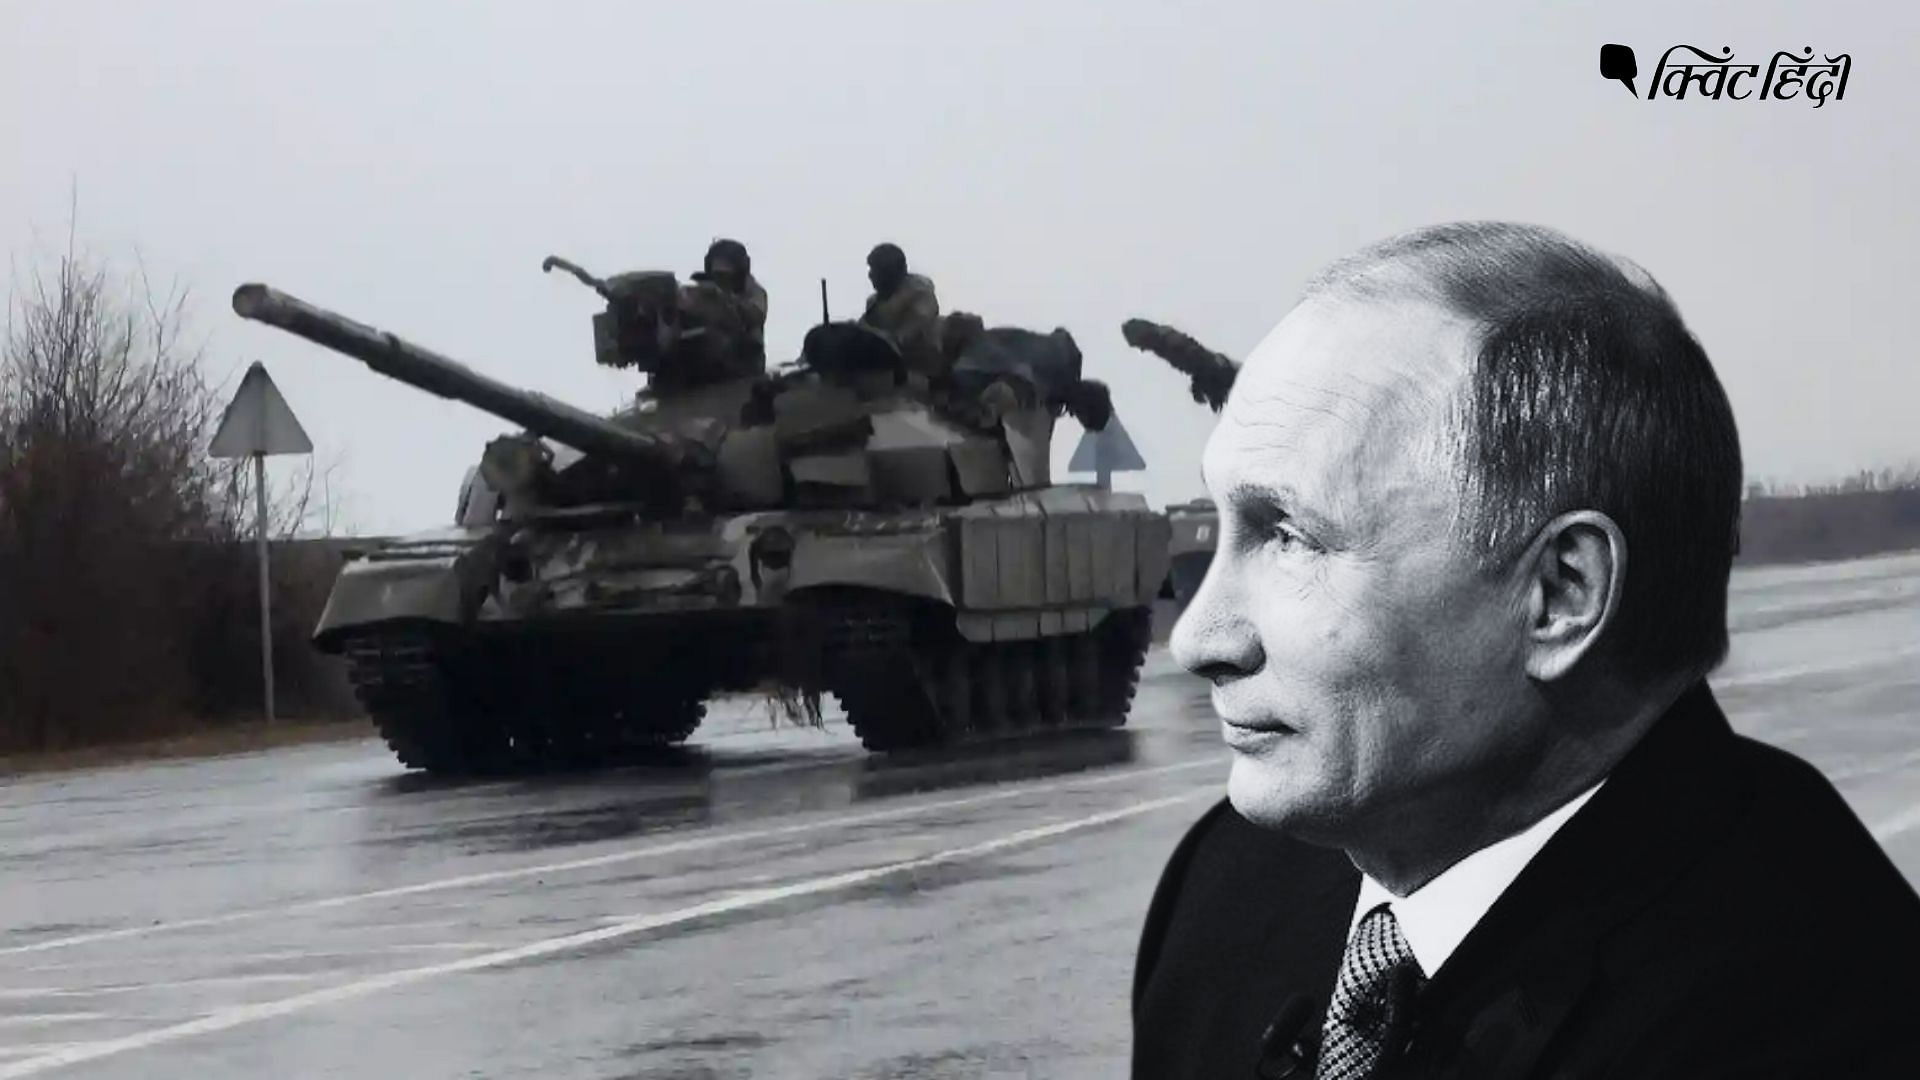 <div class="paragraphs"><p>क्या यूक्रेन में रूस की सैन्य कार्रवाई अंतरराष्ट्रीय कानूनों का उल्लंघन है?</p></div>